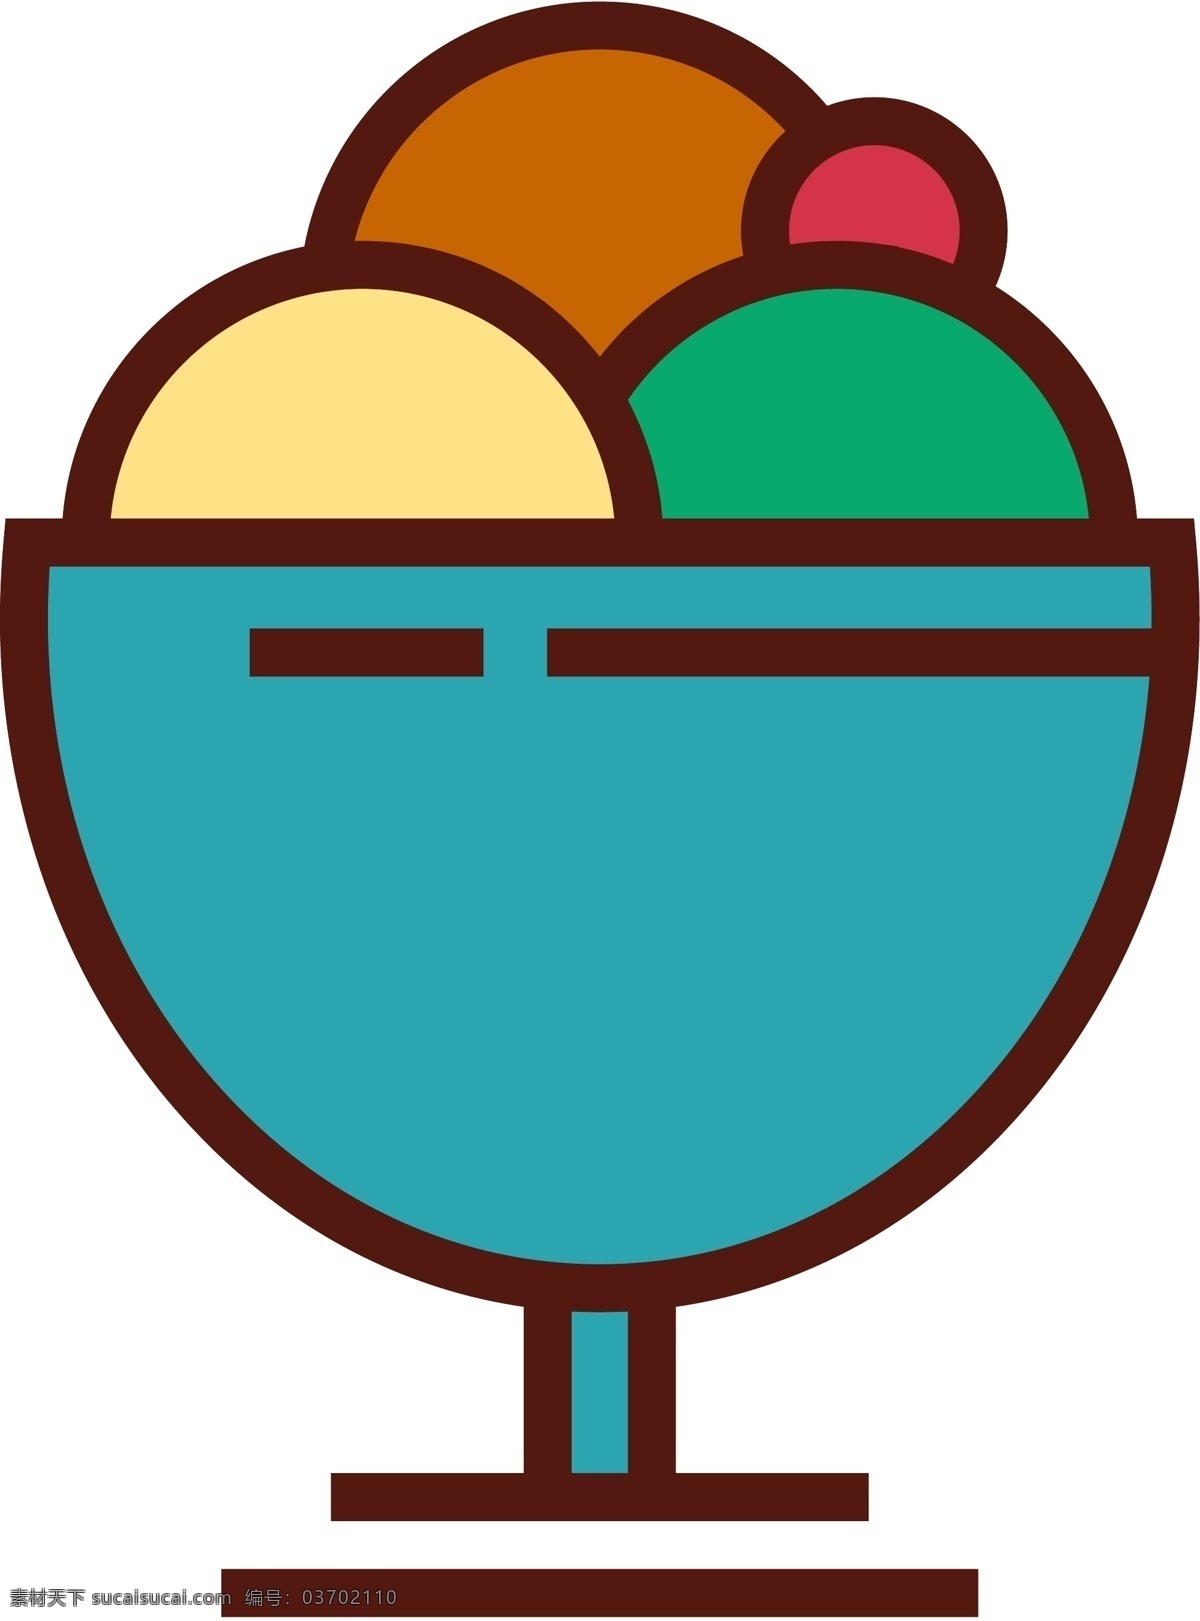 冰淇凌 icon 图标素材 零食 雪糕 食品 线性 扁平 手绘 单色 多色 简约 精美 可爱 方正 图标